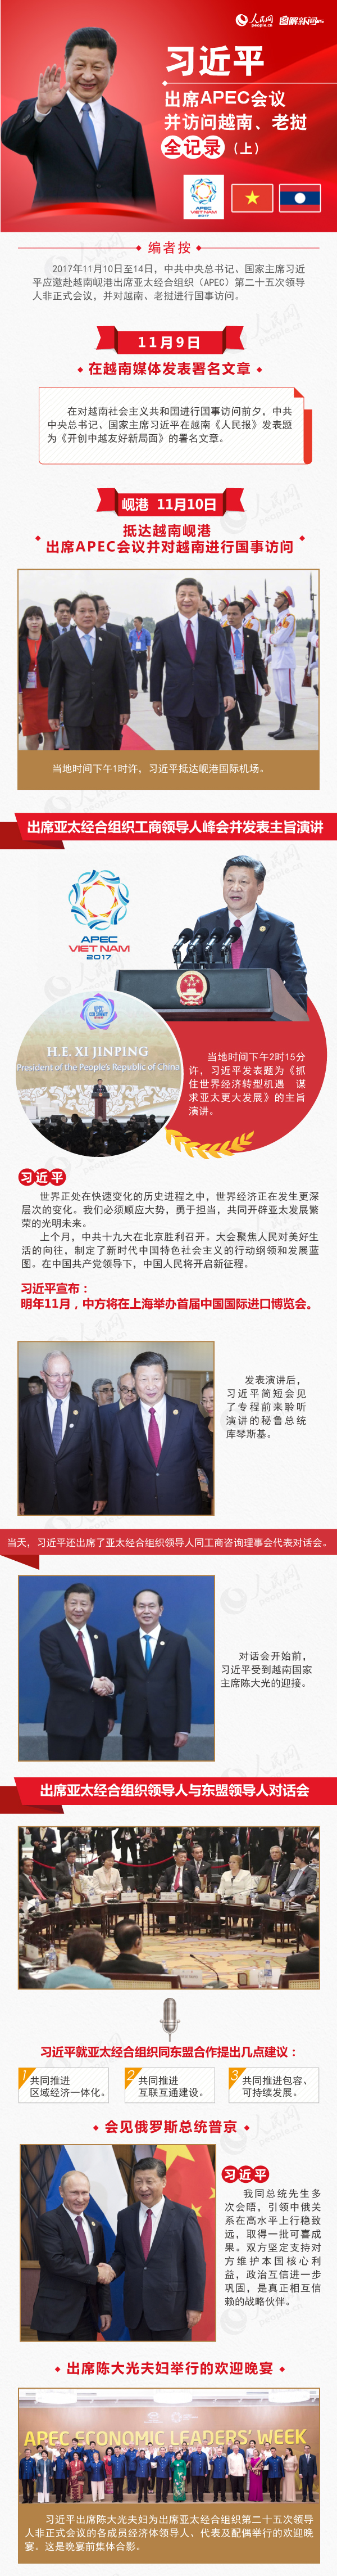 圖解:習近平出席APEC會議並訪問越南、老撾全記錄(上)